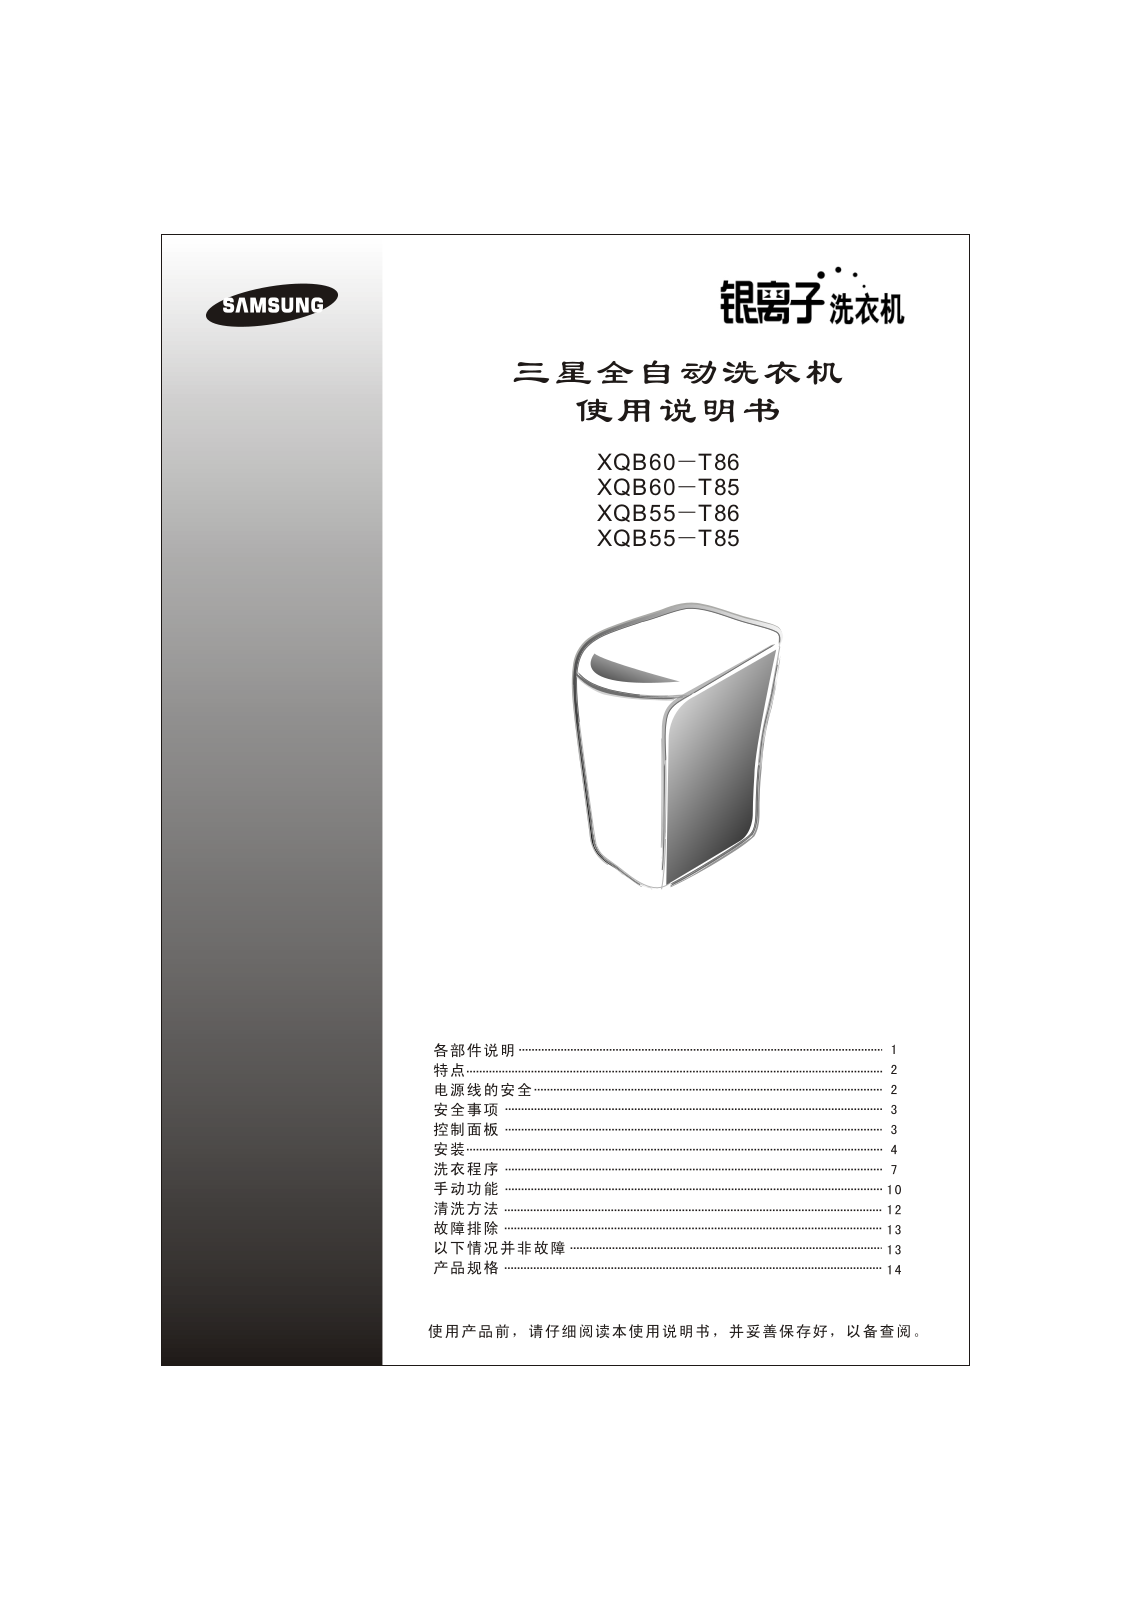 SAMSUNG XQB60-T86, XQB60-T85, XQB55-T86, XQB55-T85 User Manual